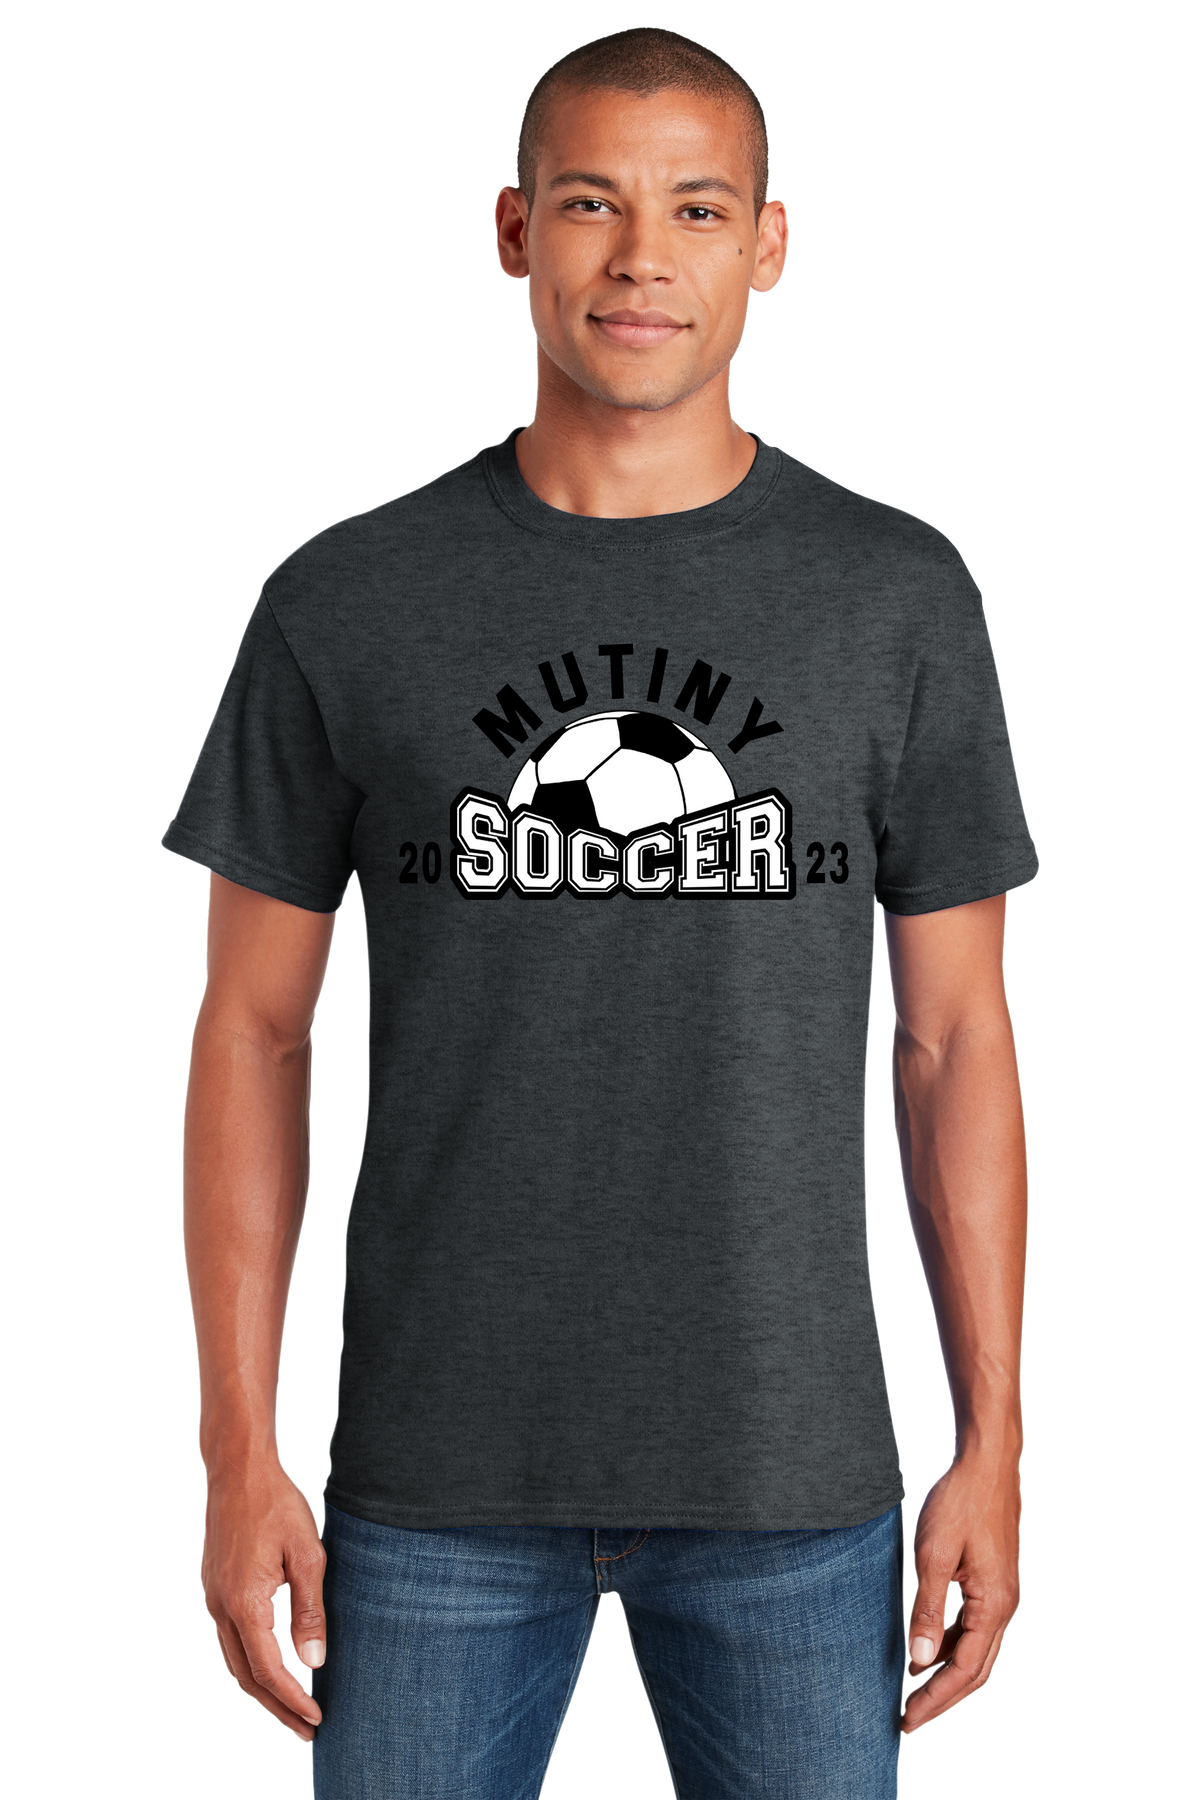 Mutiny Soccer 2023 Adult Tshirt